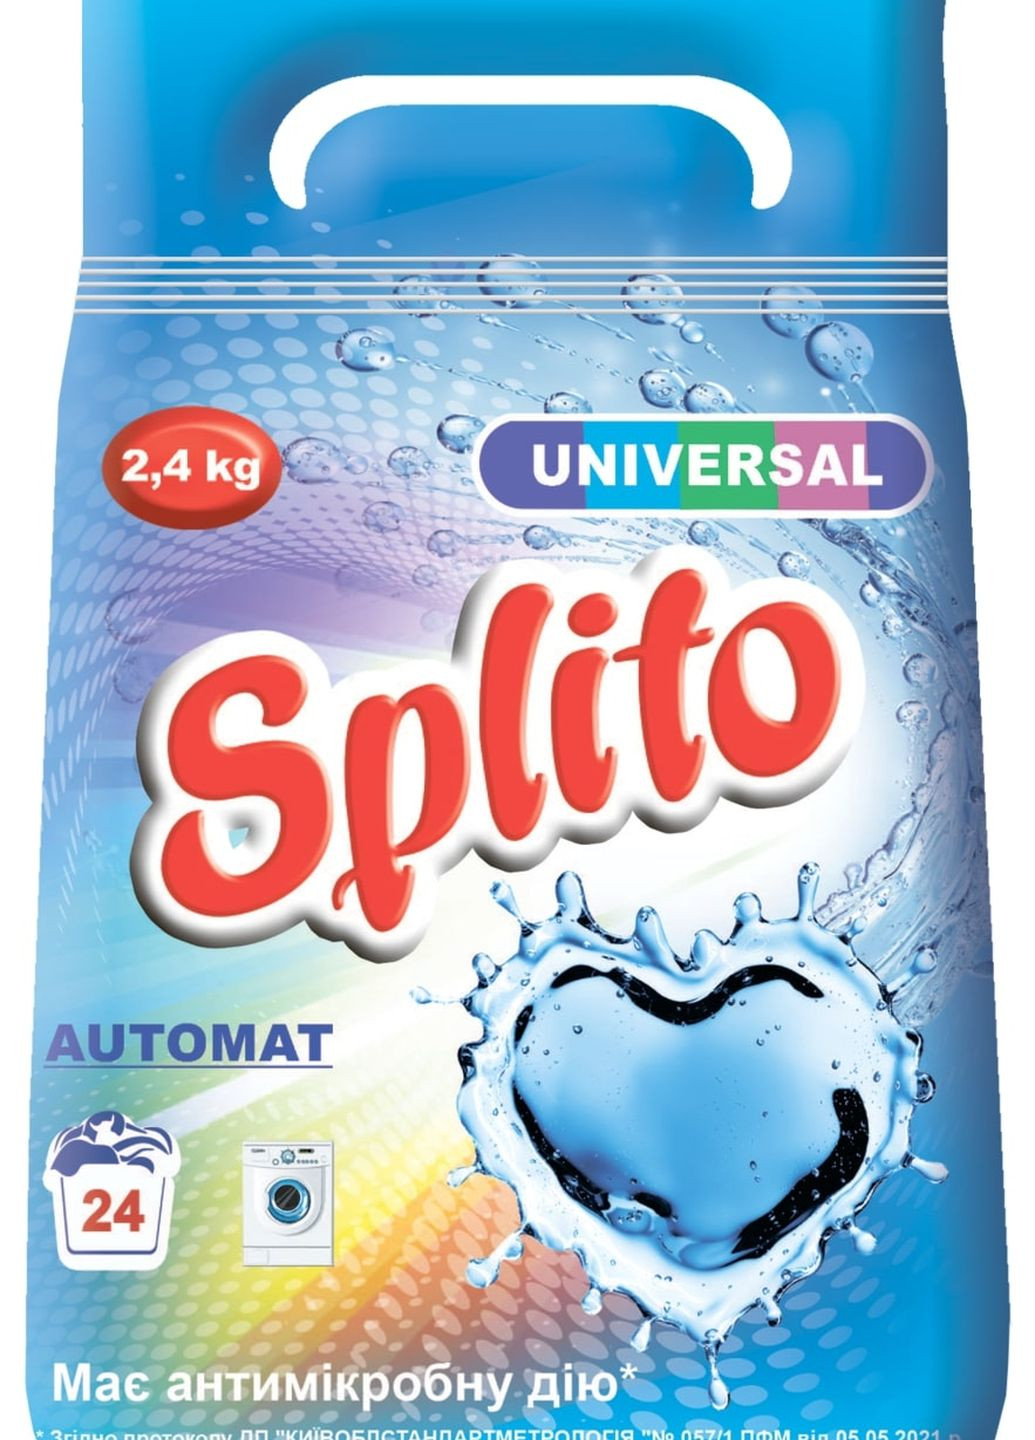 Безфосфатний порошок д/прання Universal автомат 2400г ТМ Splito (264075740)